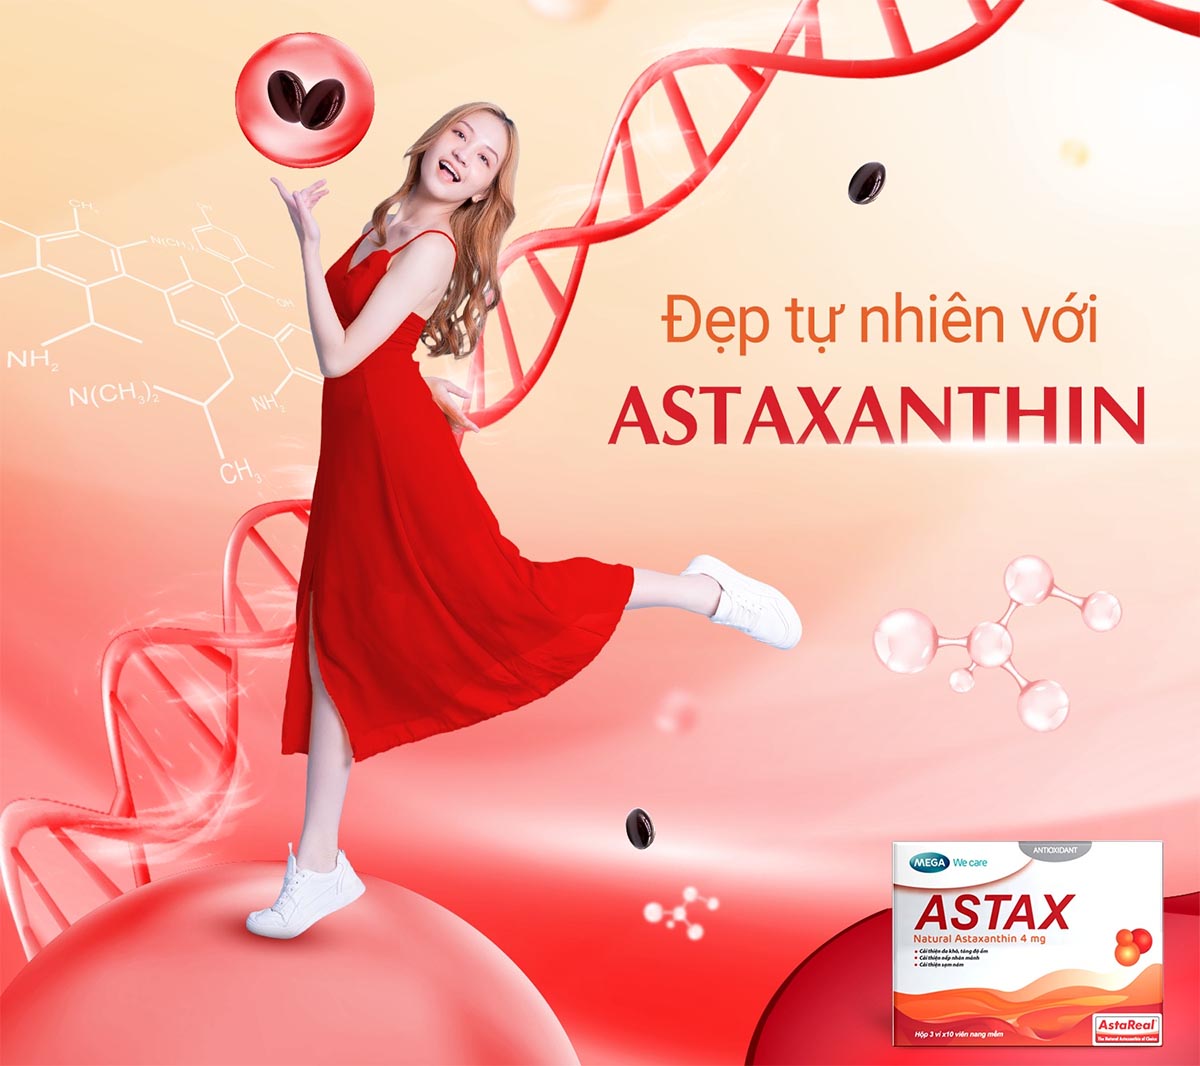 Astax giúp tăng độ ẩm cho da